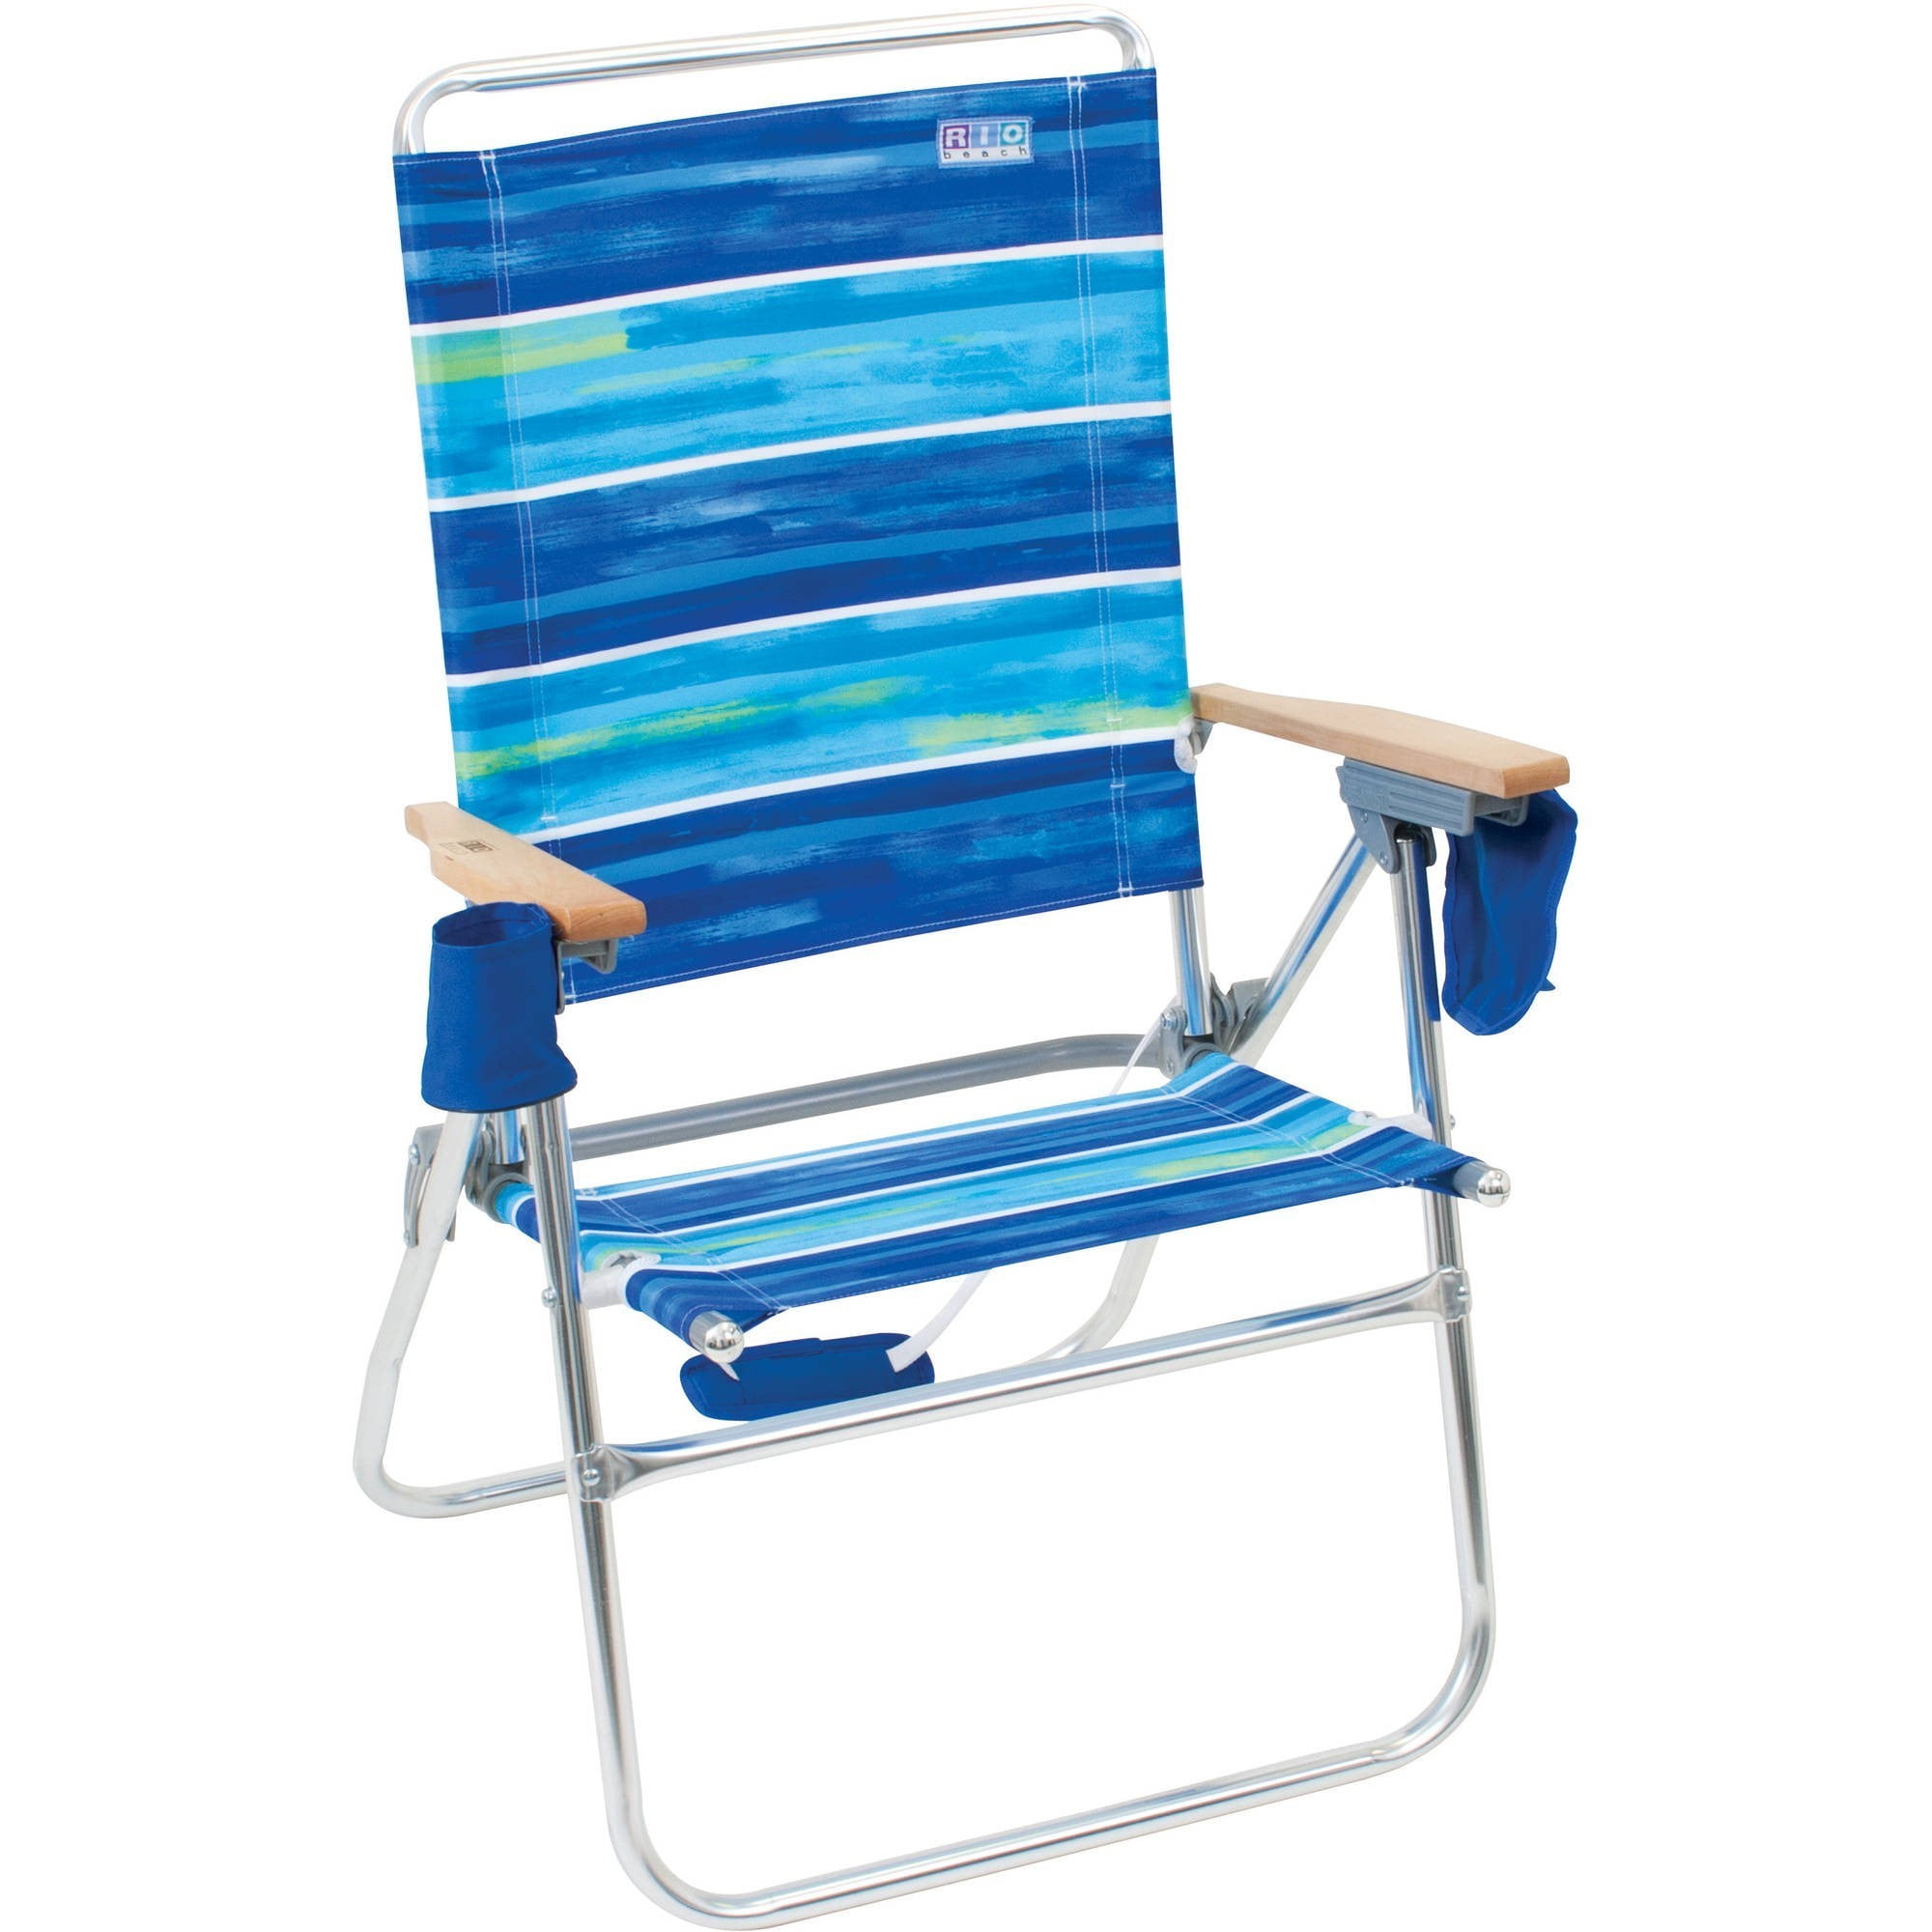 17 inch beach chair